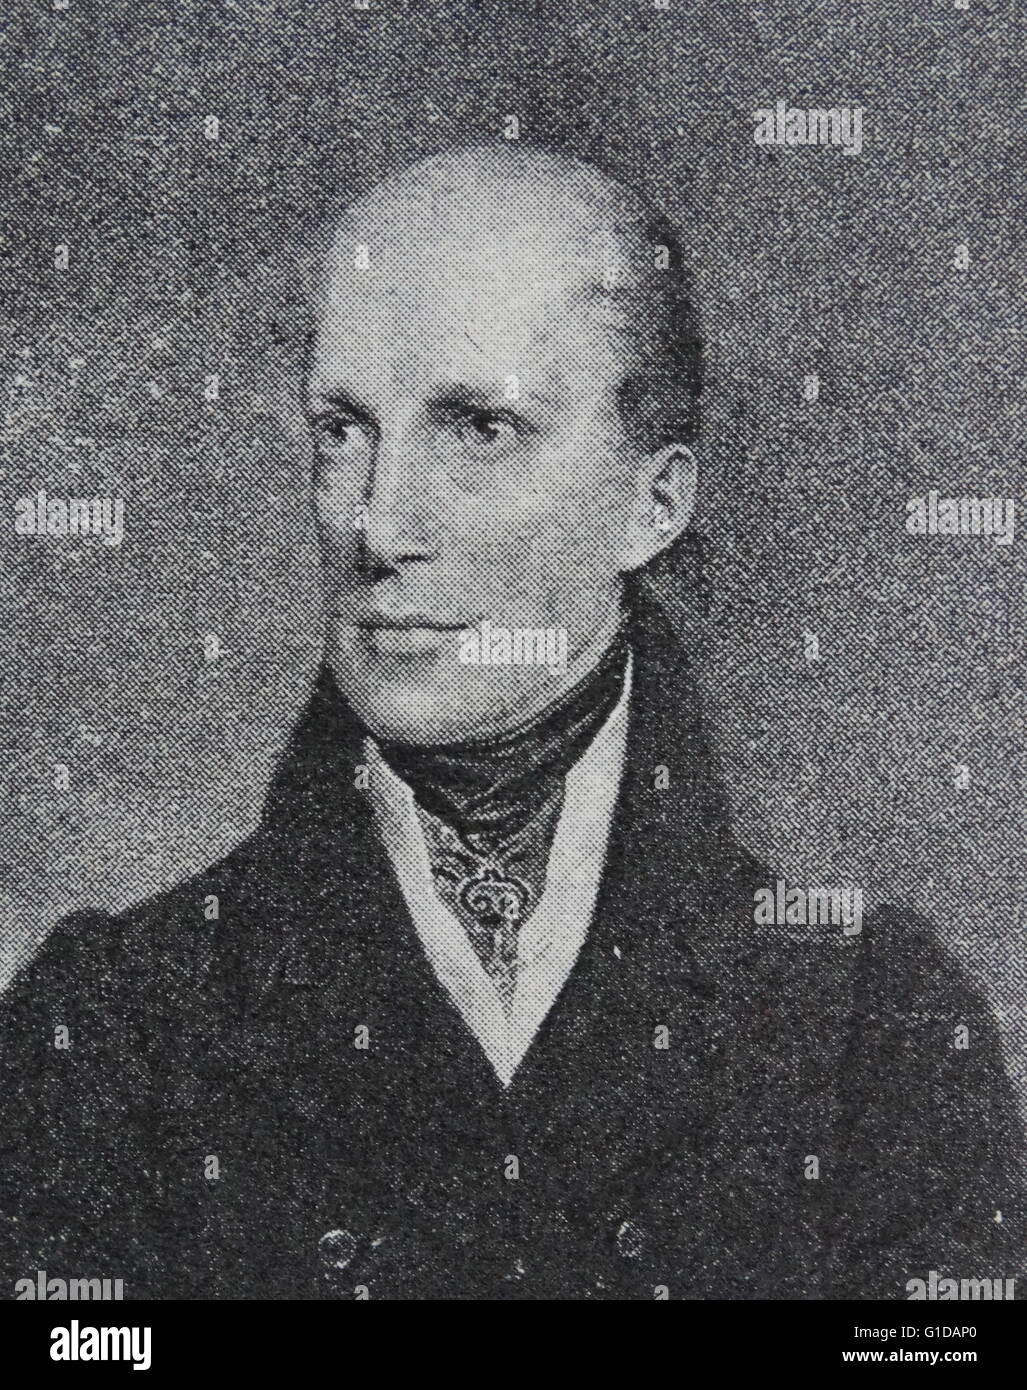 Erzherzog Johannes von Österreich (1782 – 1859), Mitglied des Hauses Habsburg-Lothringen, war ein österreichischer Feldmarschall und deutschen kaiserlichen Regenten (Reichsverweser) während der Revolutionen von 1848. Stockfoto